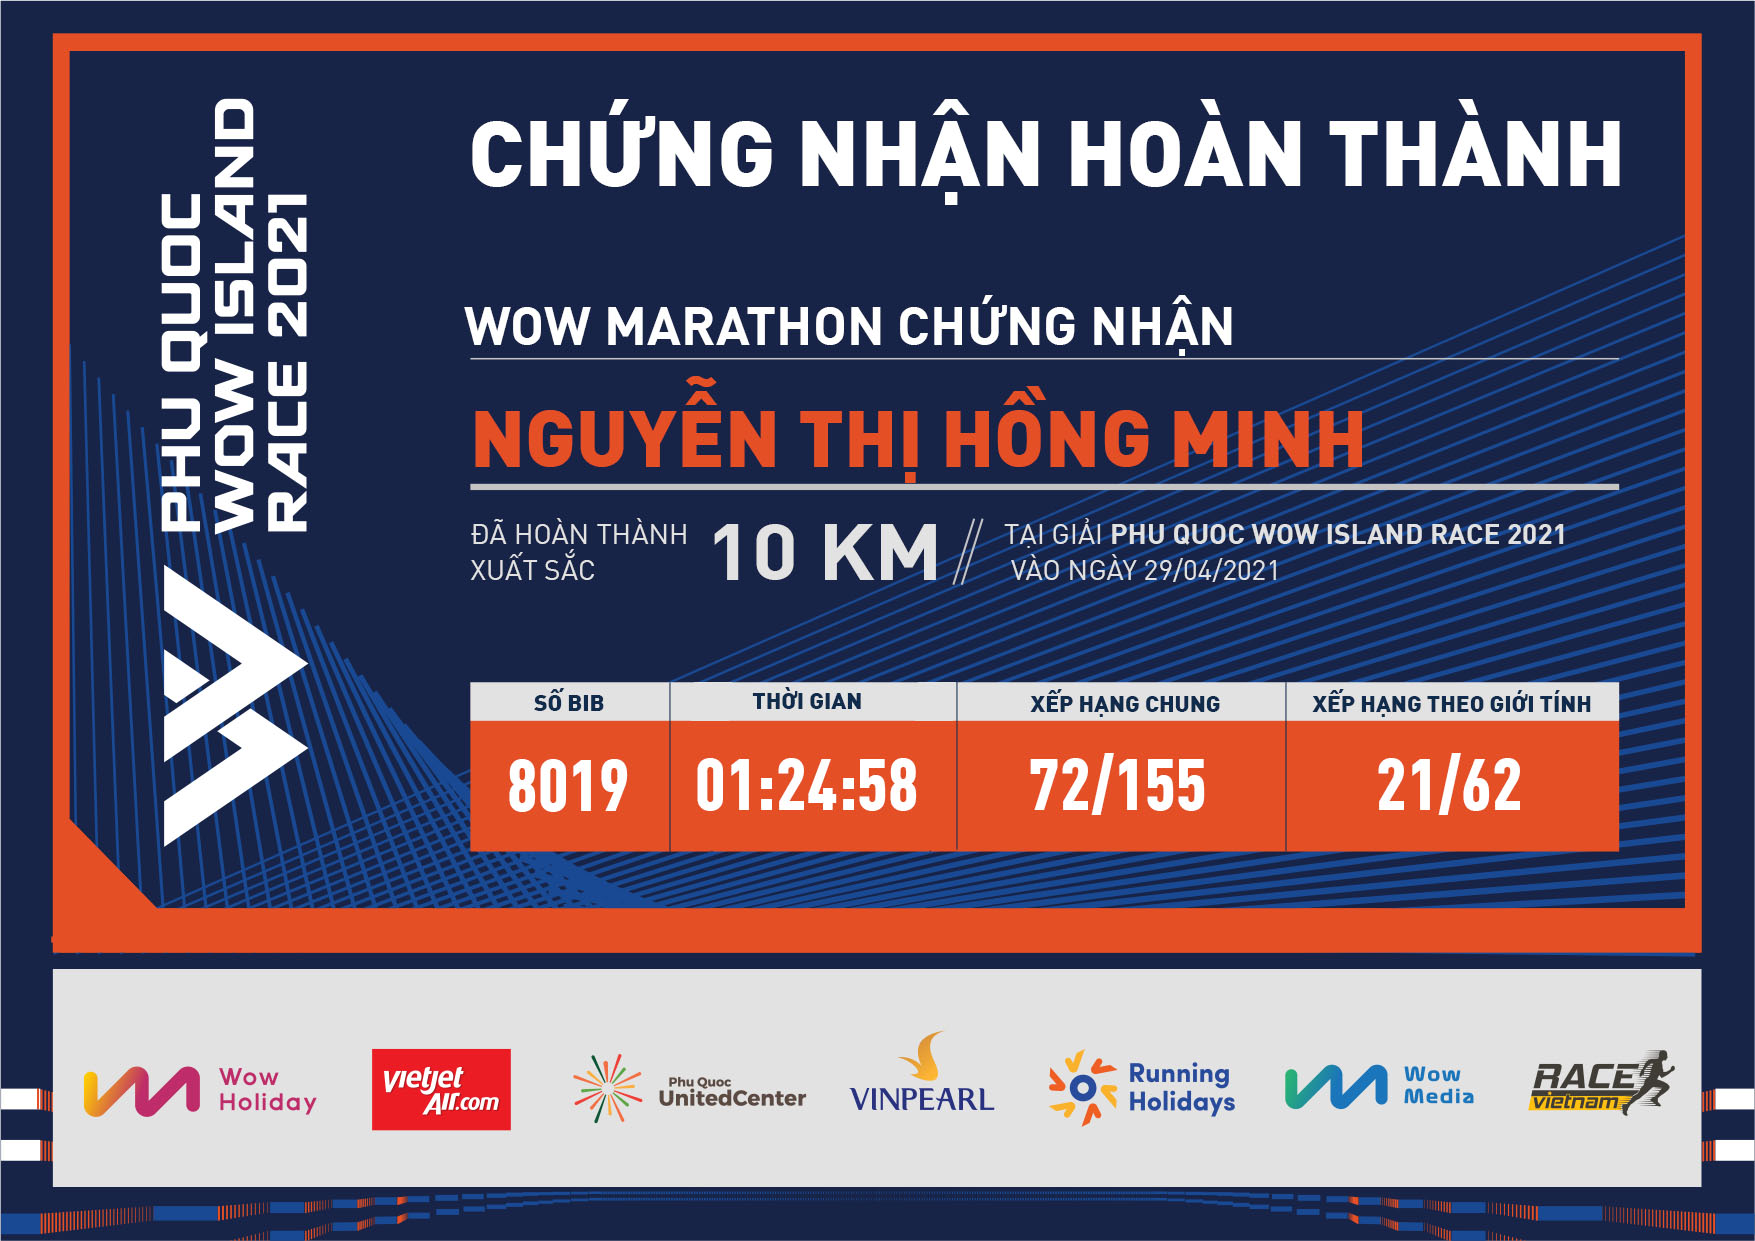 8019 - Nguyễn Thị Hồng Minh